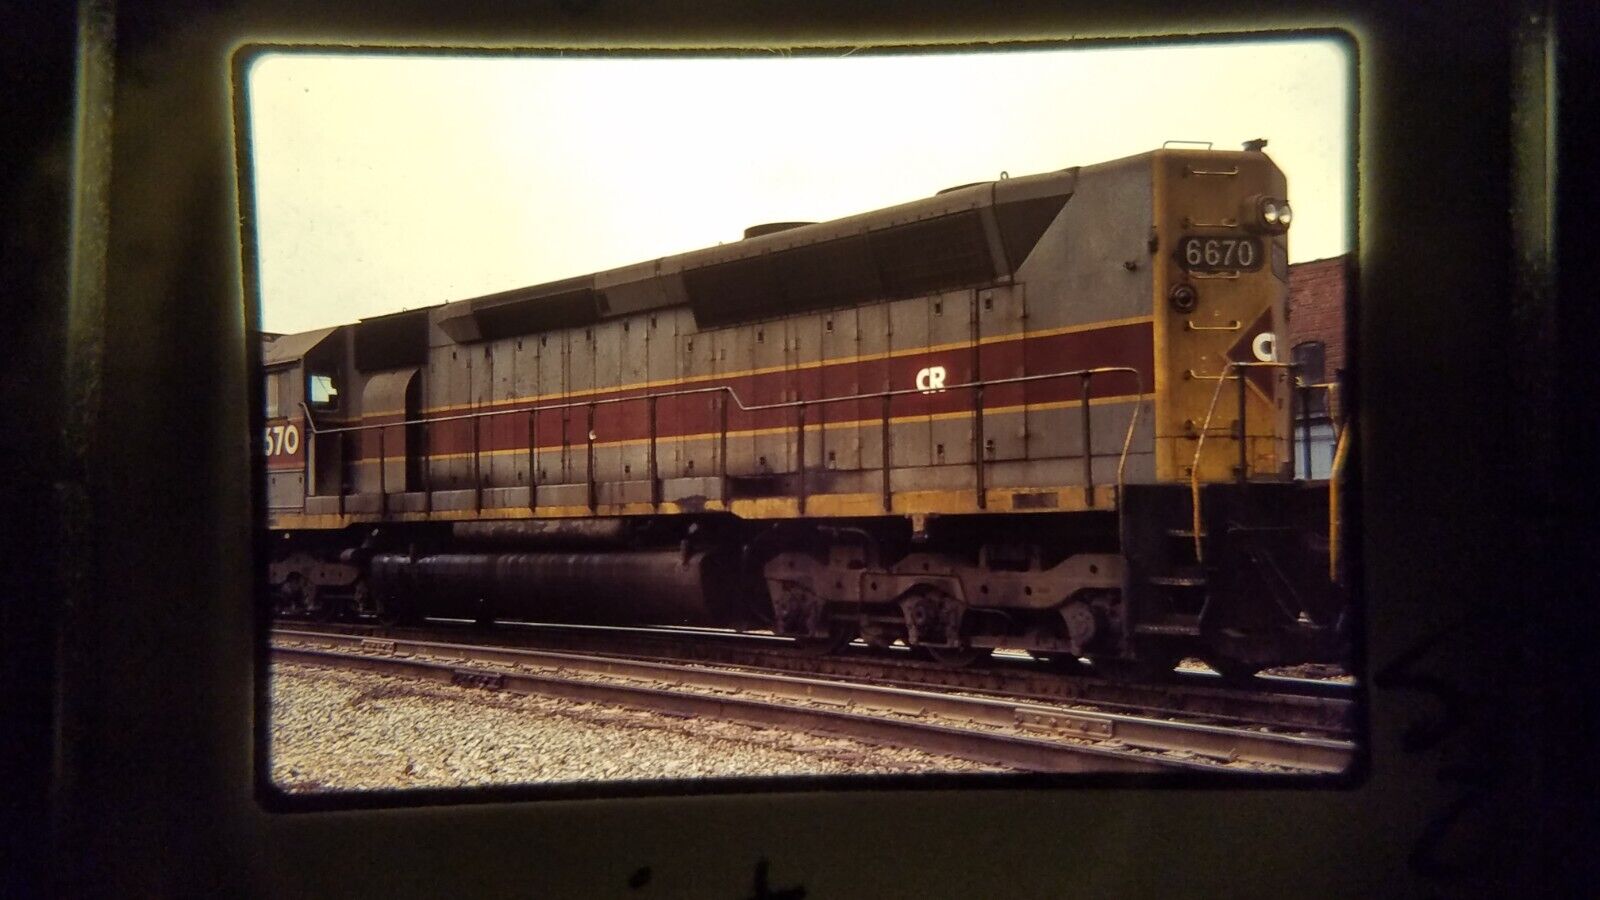 XSX20 35MM Train Slide ENGINE LOCOMOTIVE RR CR CONRAIL 1977 EL PAINT T. HAUS